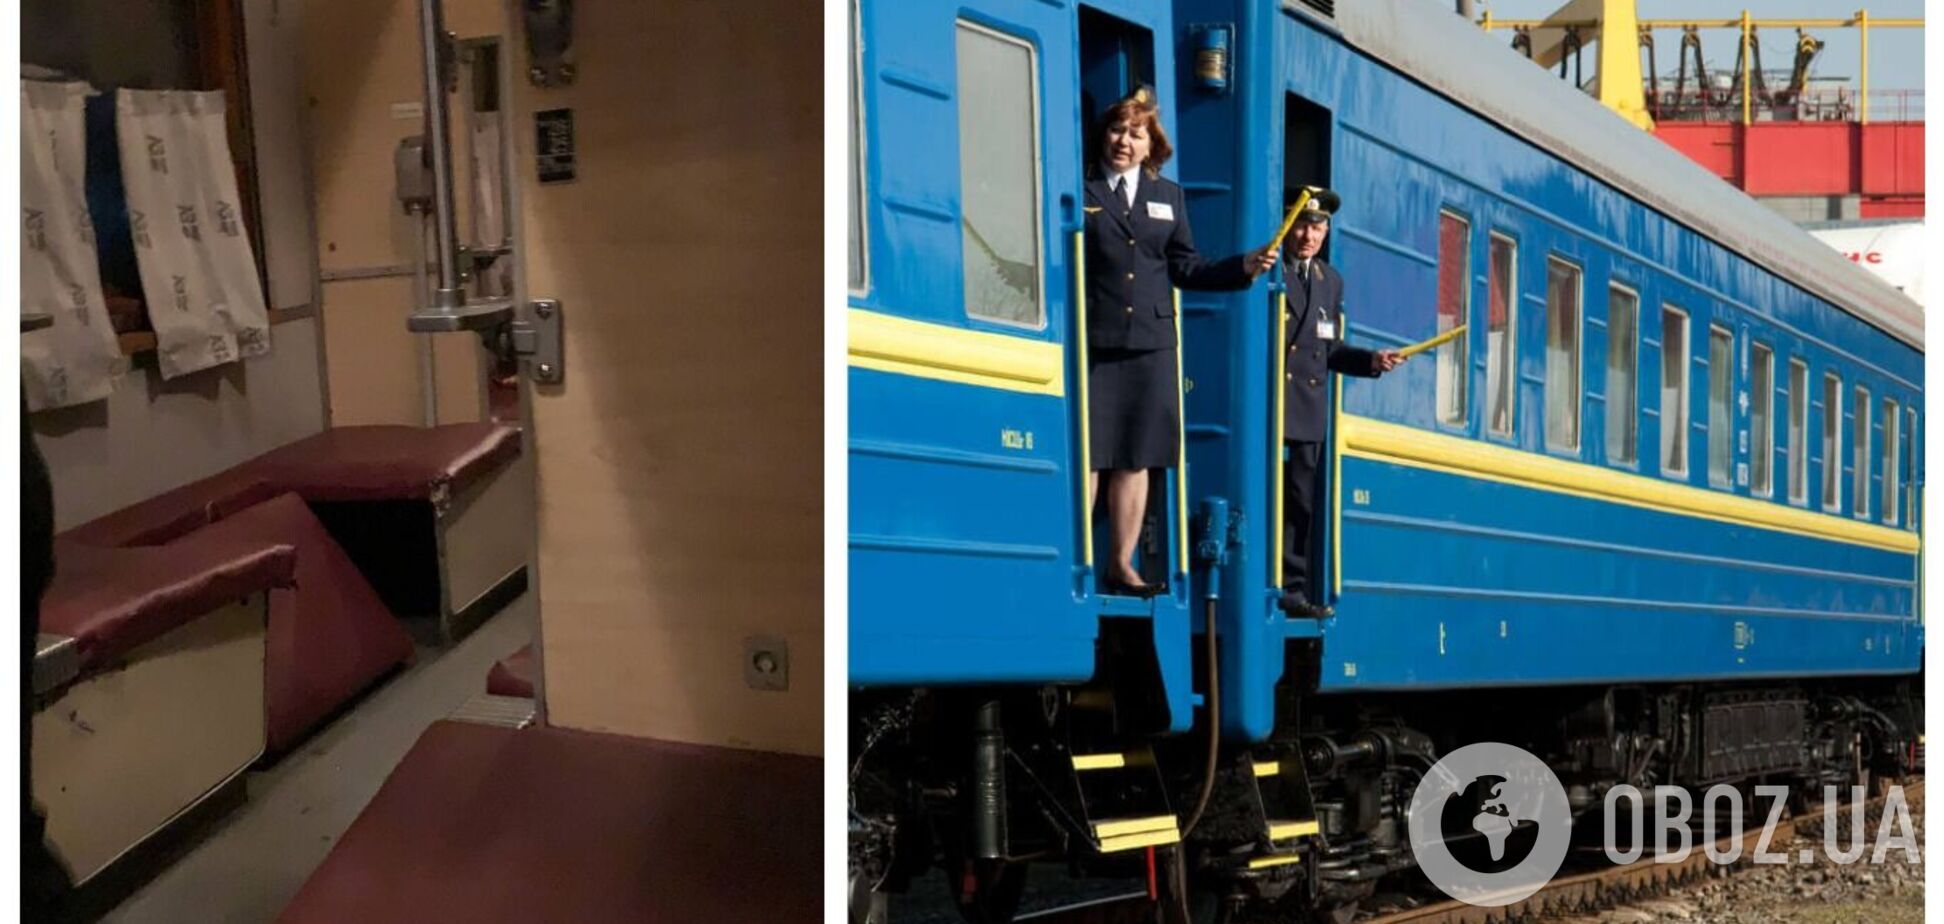 Украинцы пожаловались на условия в поезде Одесса – Черновцы: полки отваливаются. Фото и видео